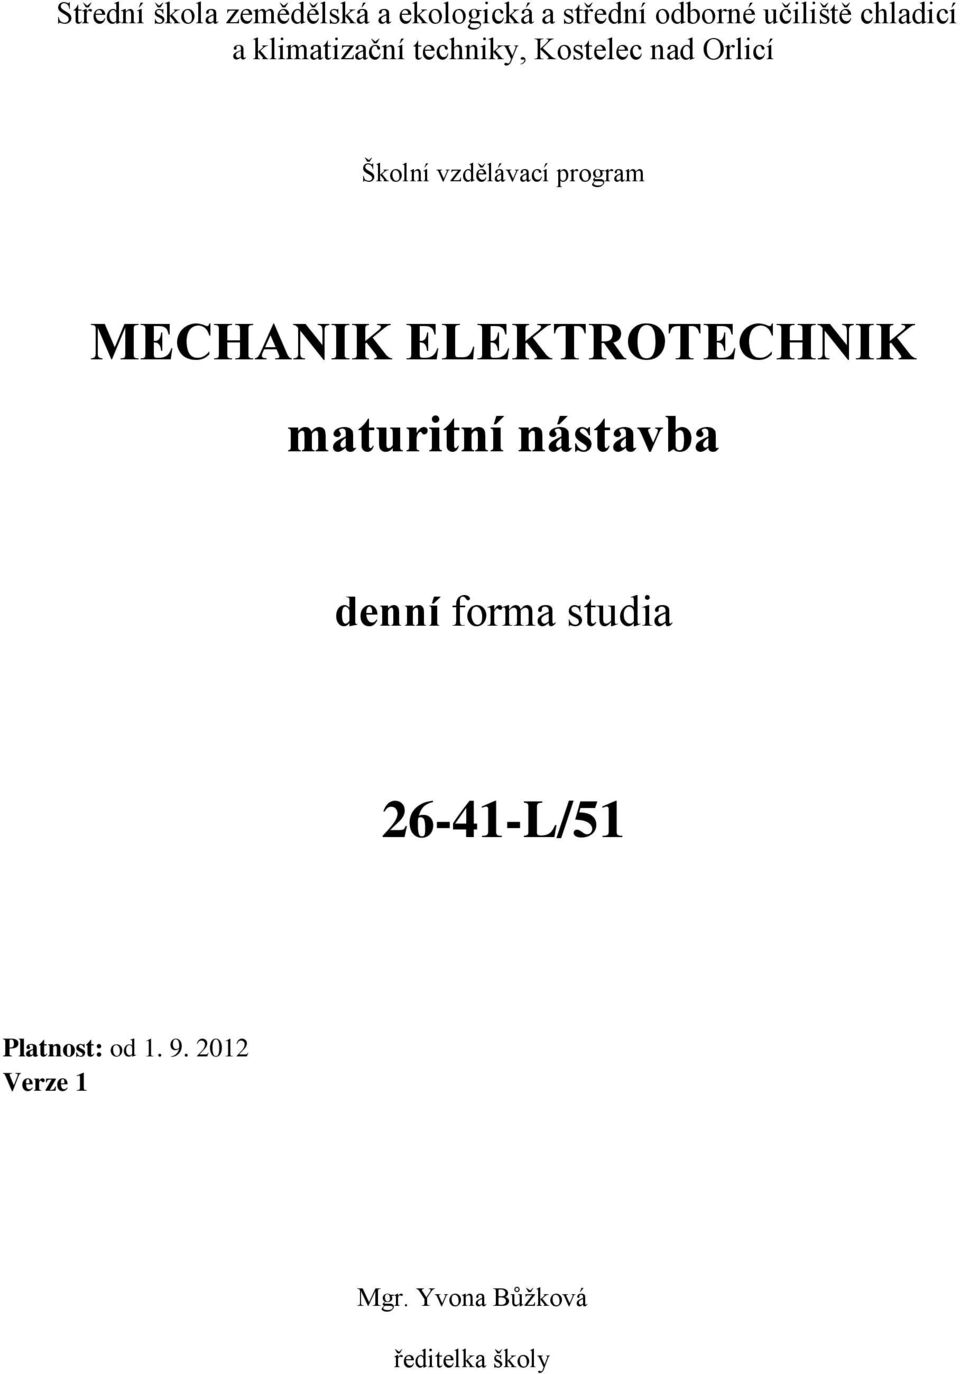 MECHANIK ELEKTROTECHNIK maturitní nástavba denní forma studia 26-41-L/51